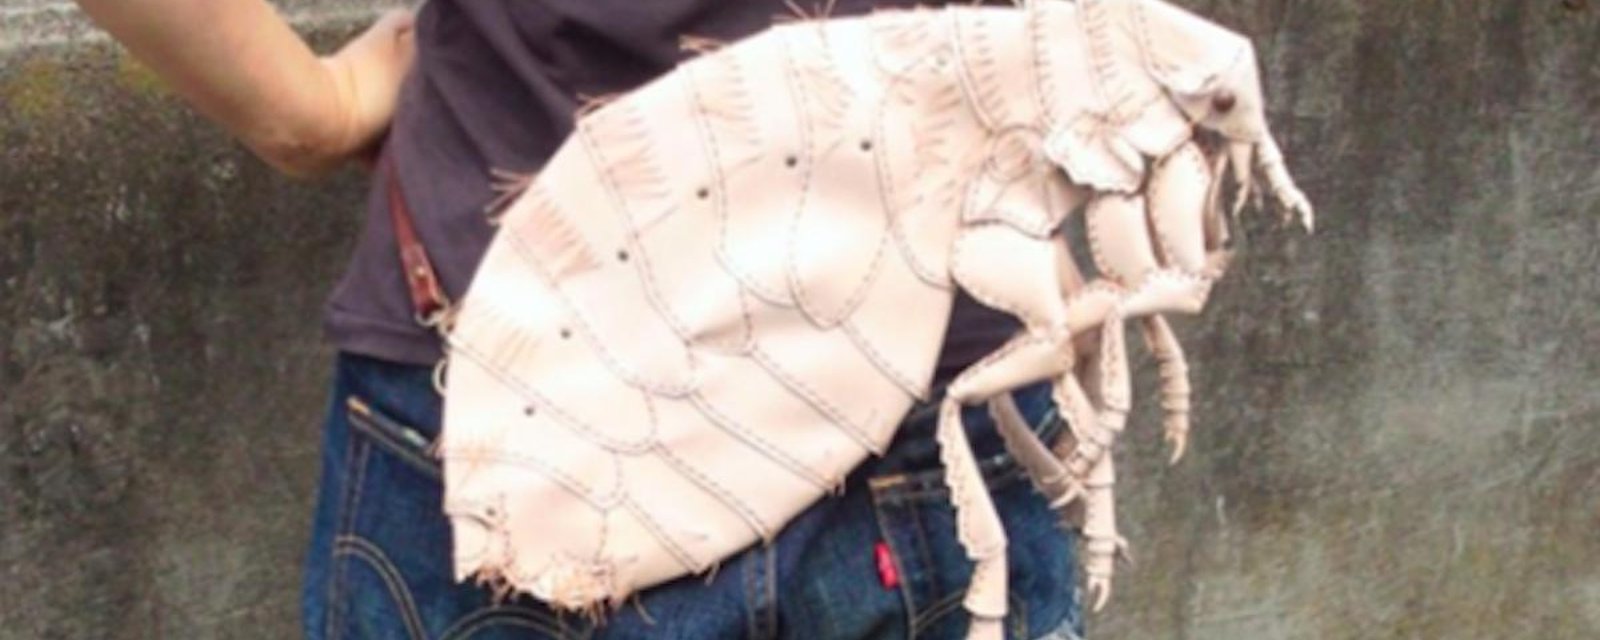 Un artiste crée des sacs en forme d’insectes pour aider les gens à soigner leur phobie